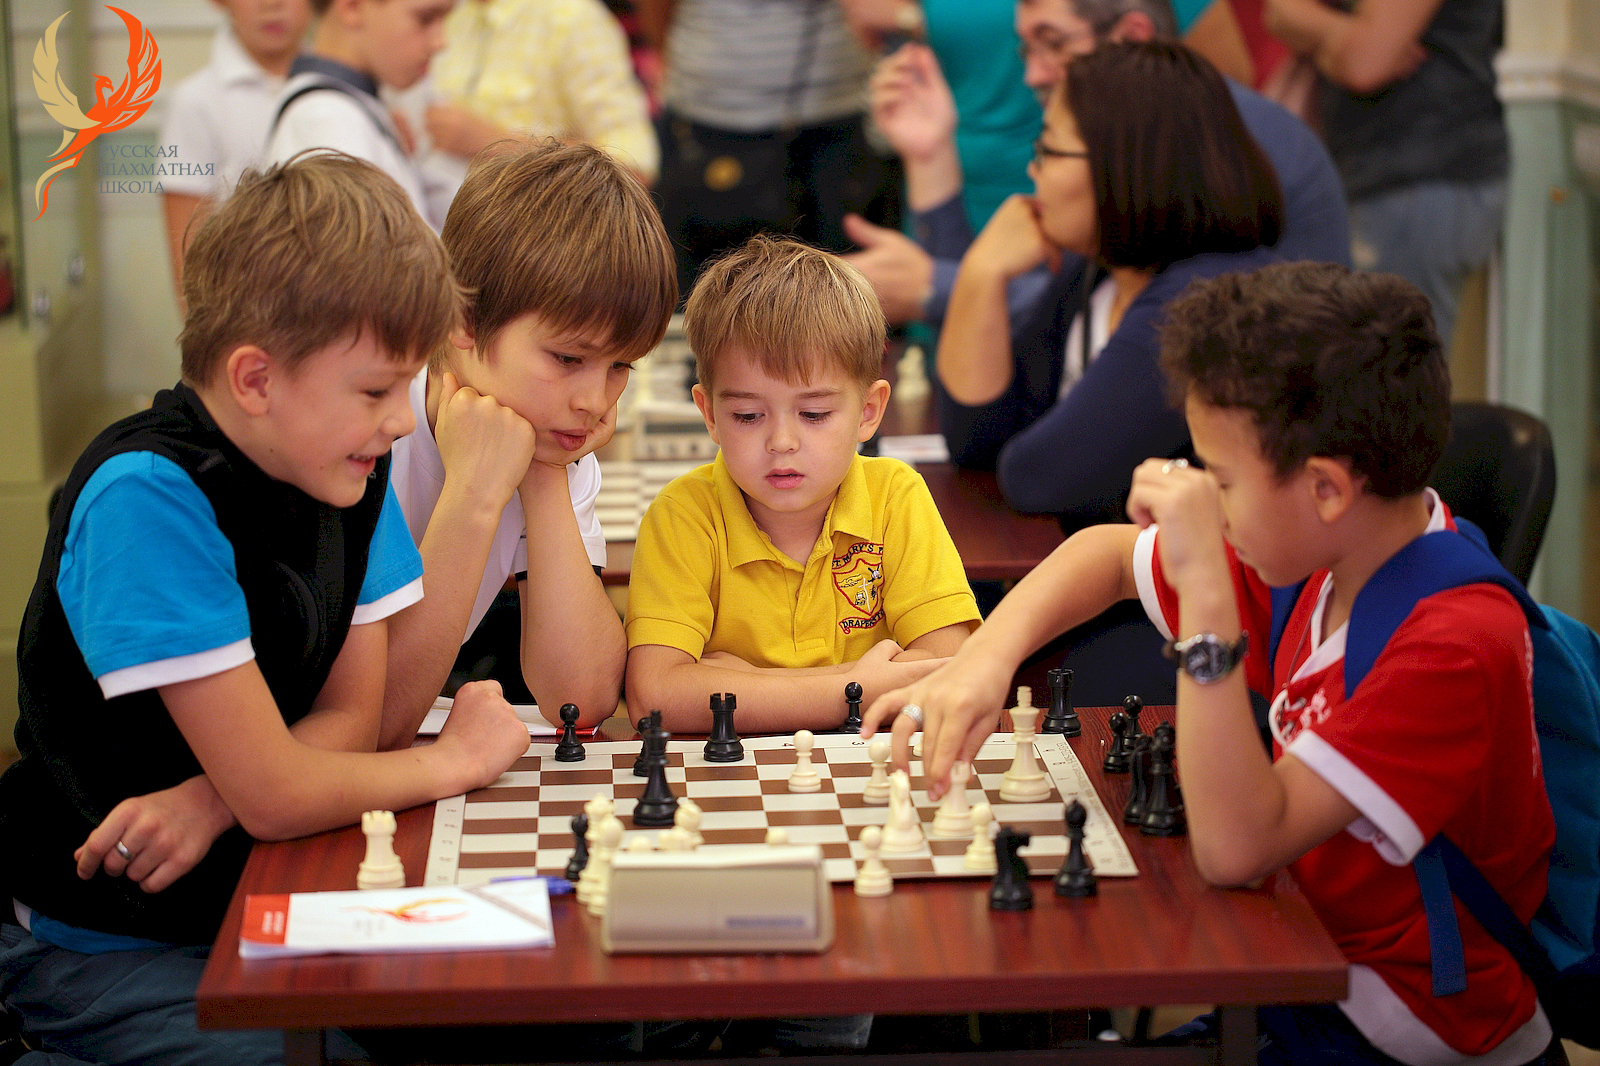 Название игры для школьников. Шахматы "школьник". Урок шахмат в школе. Младшие школьники секции шахматы. Школьники играют в шахматы.